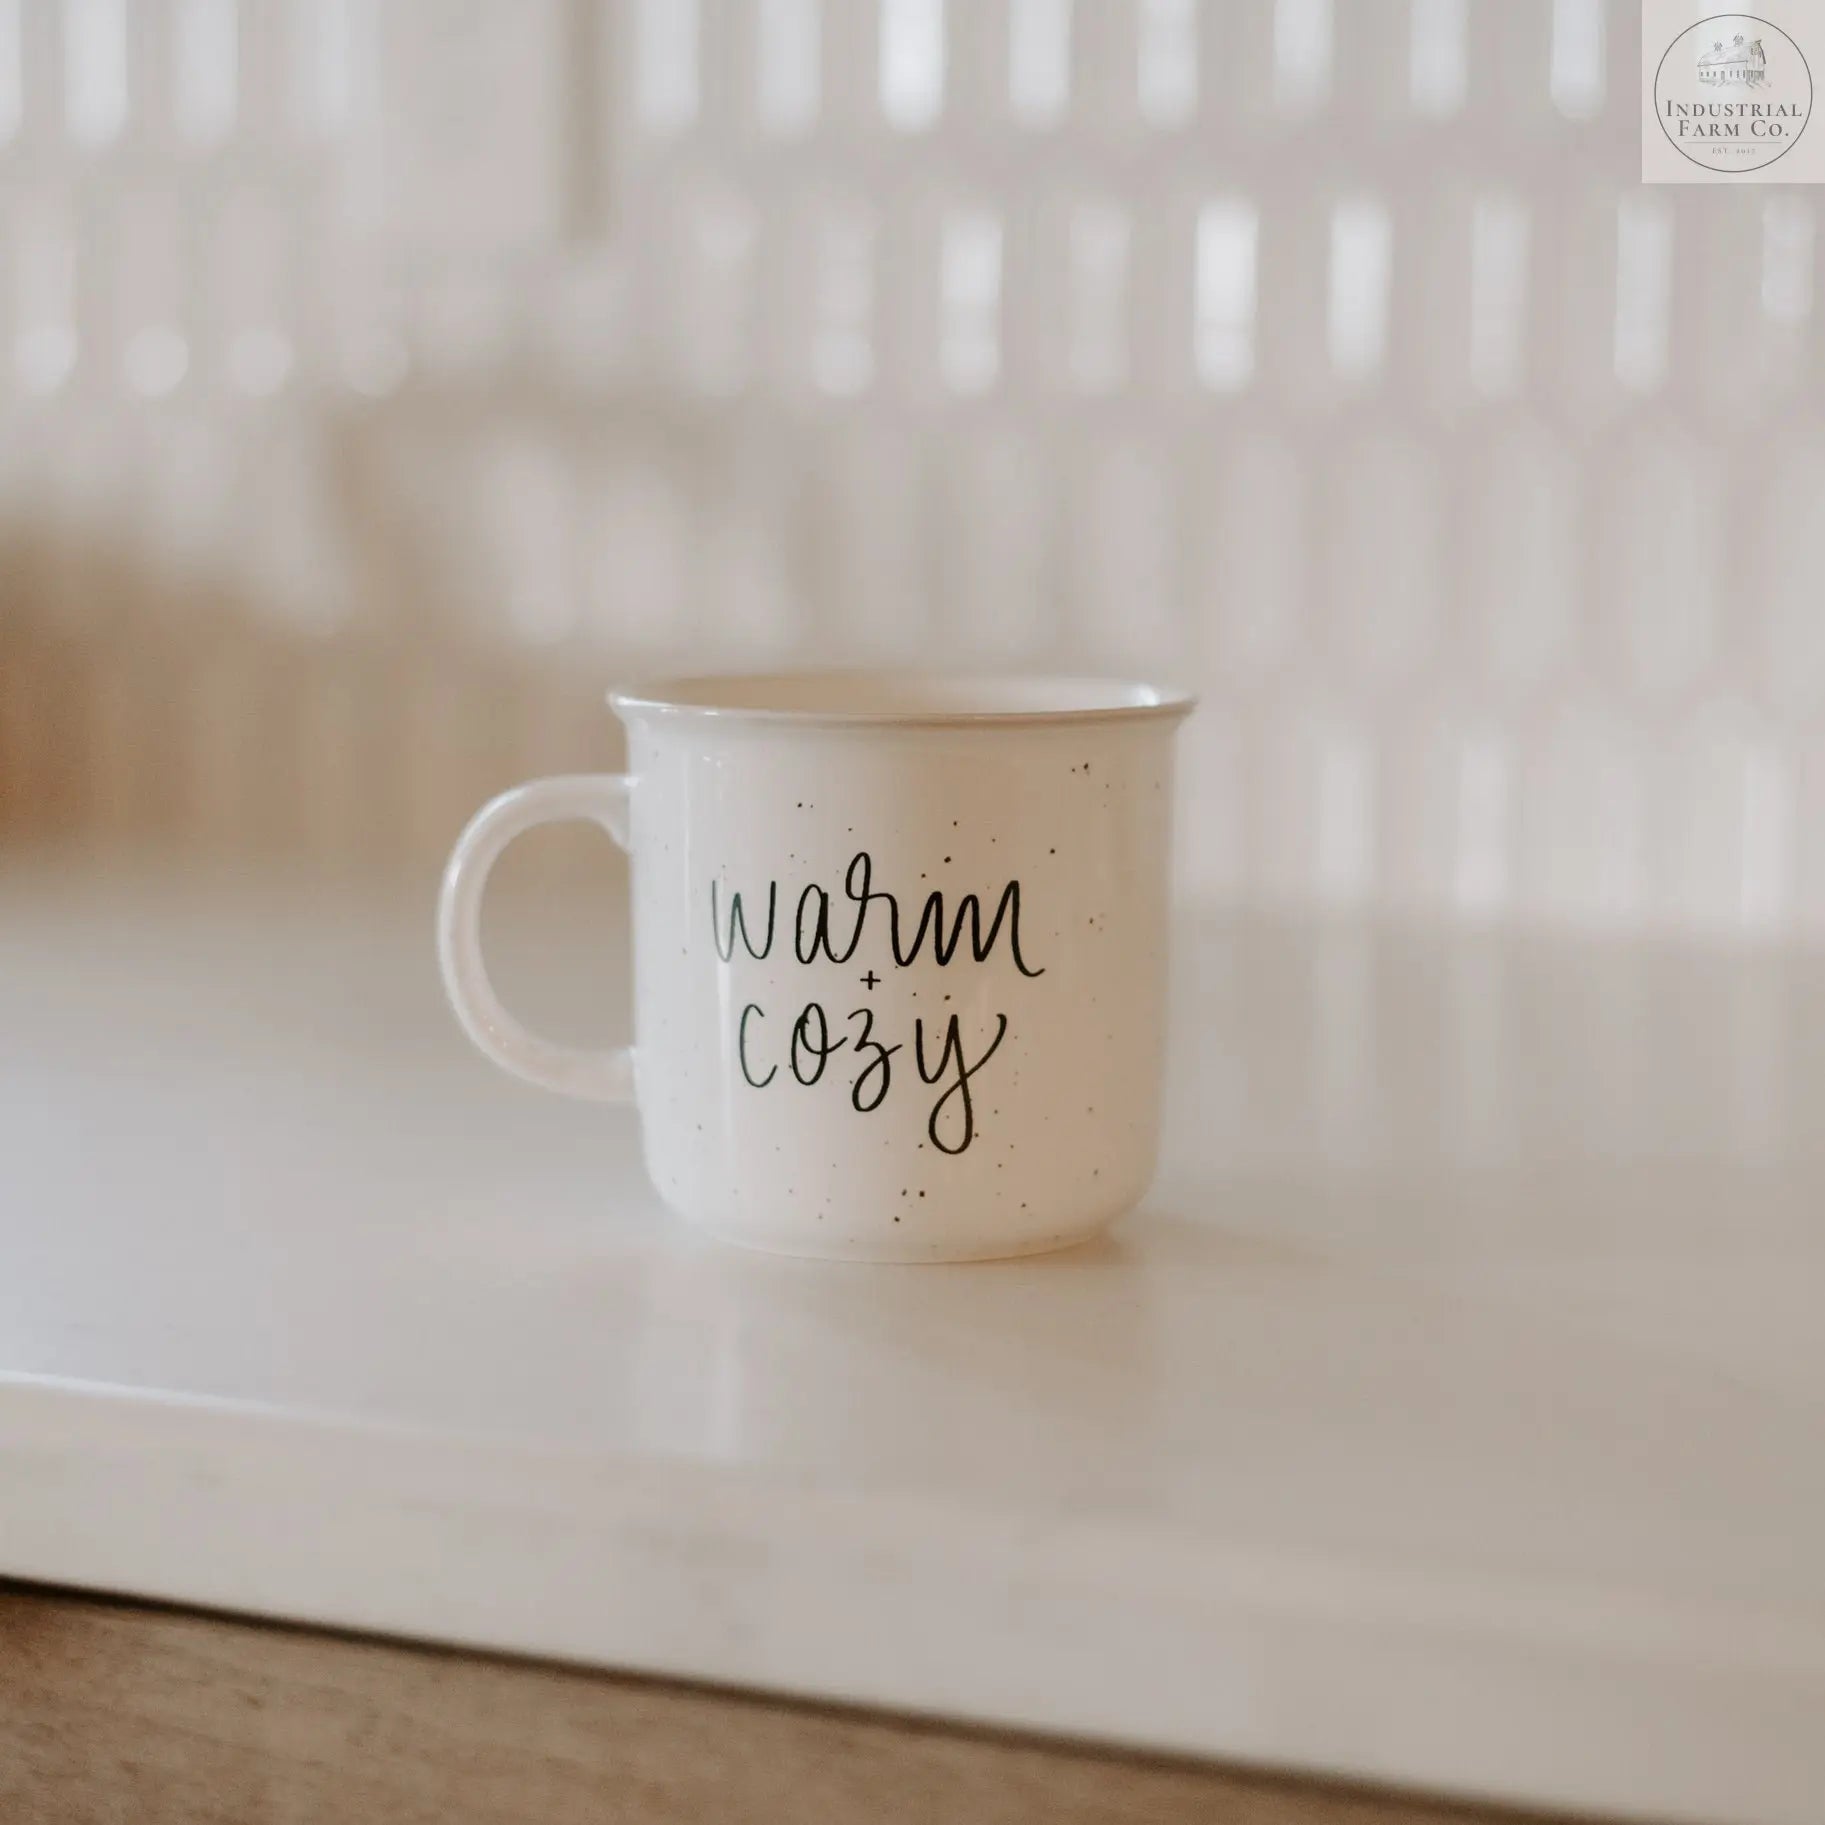 Warm & Cozy Coffee Mug  Default Title   | Industrial Farm Co